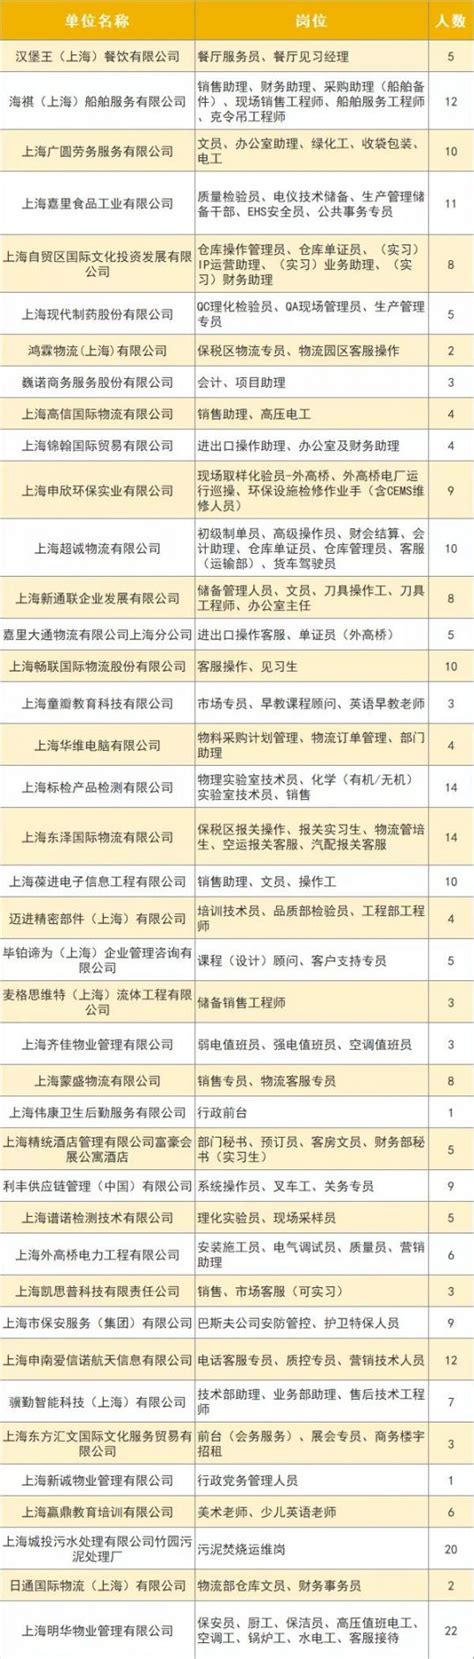 2019浦东新区高桥镇应届毕业生专场招聘会7月6日举行- 上海本地宝